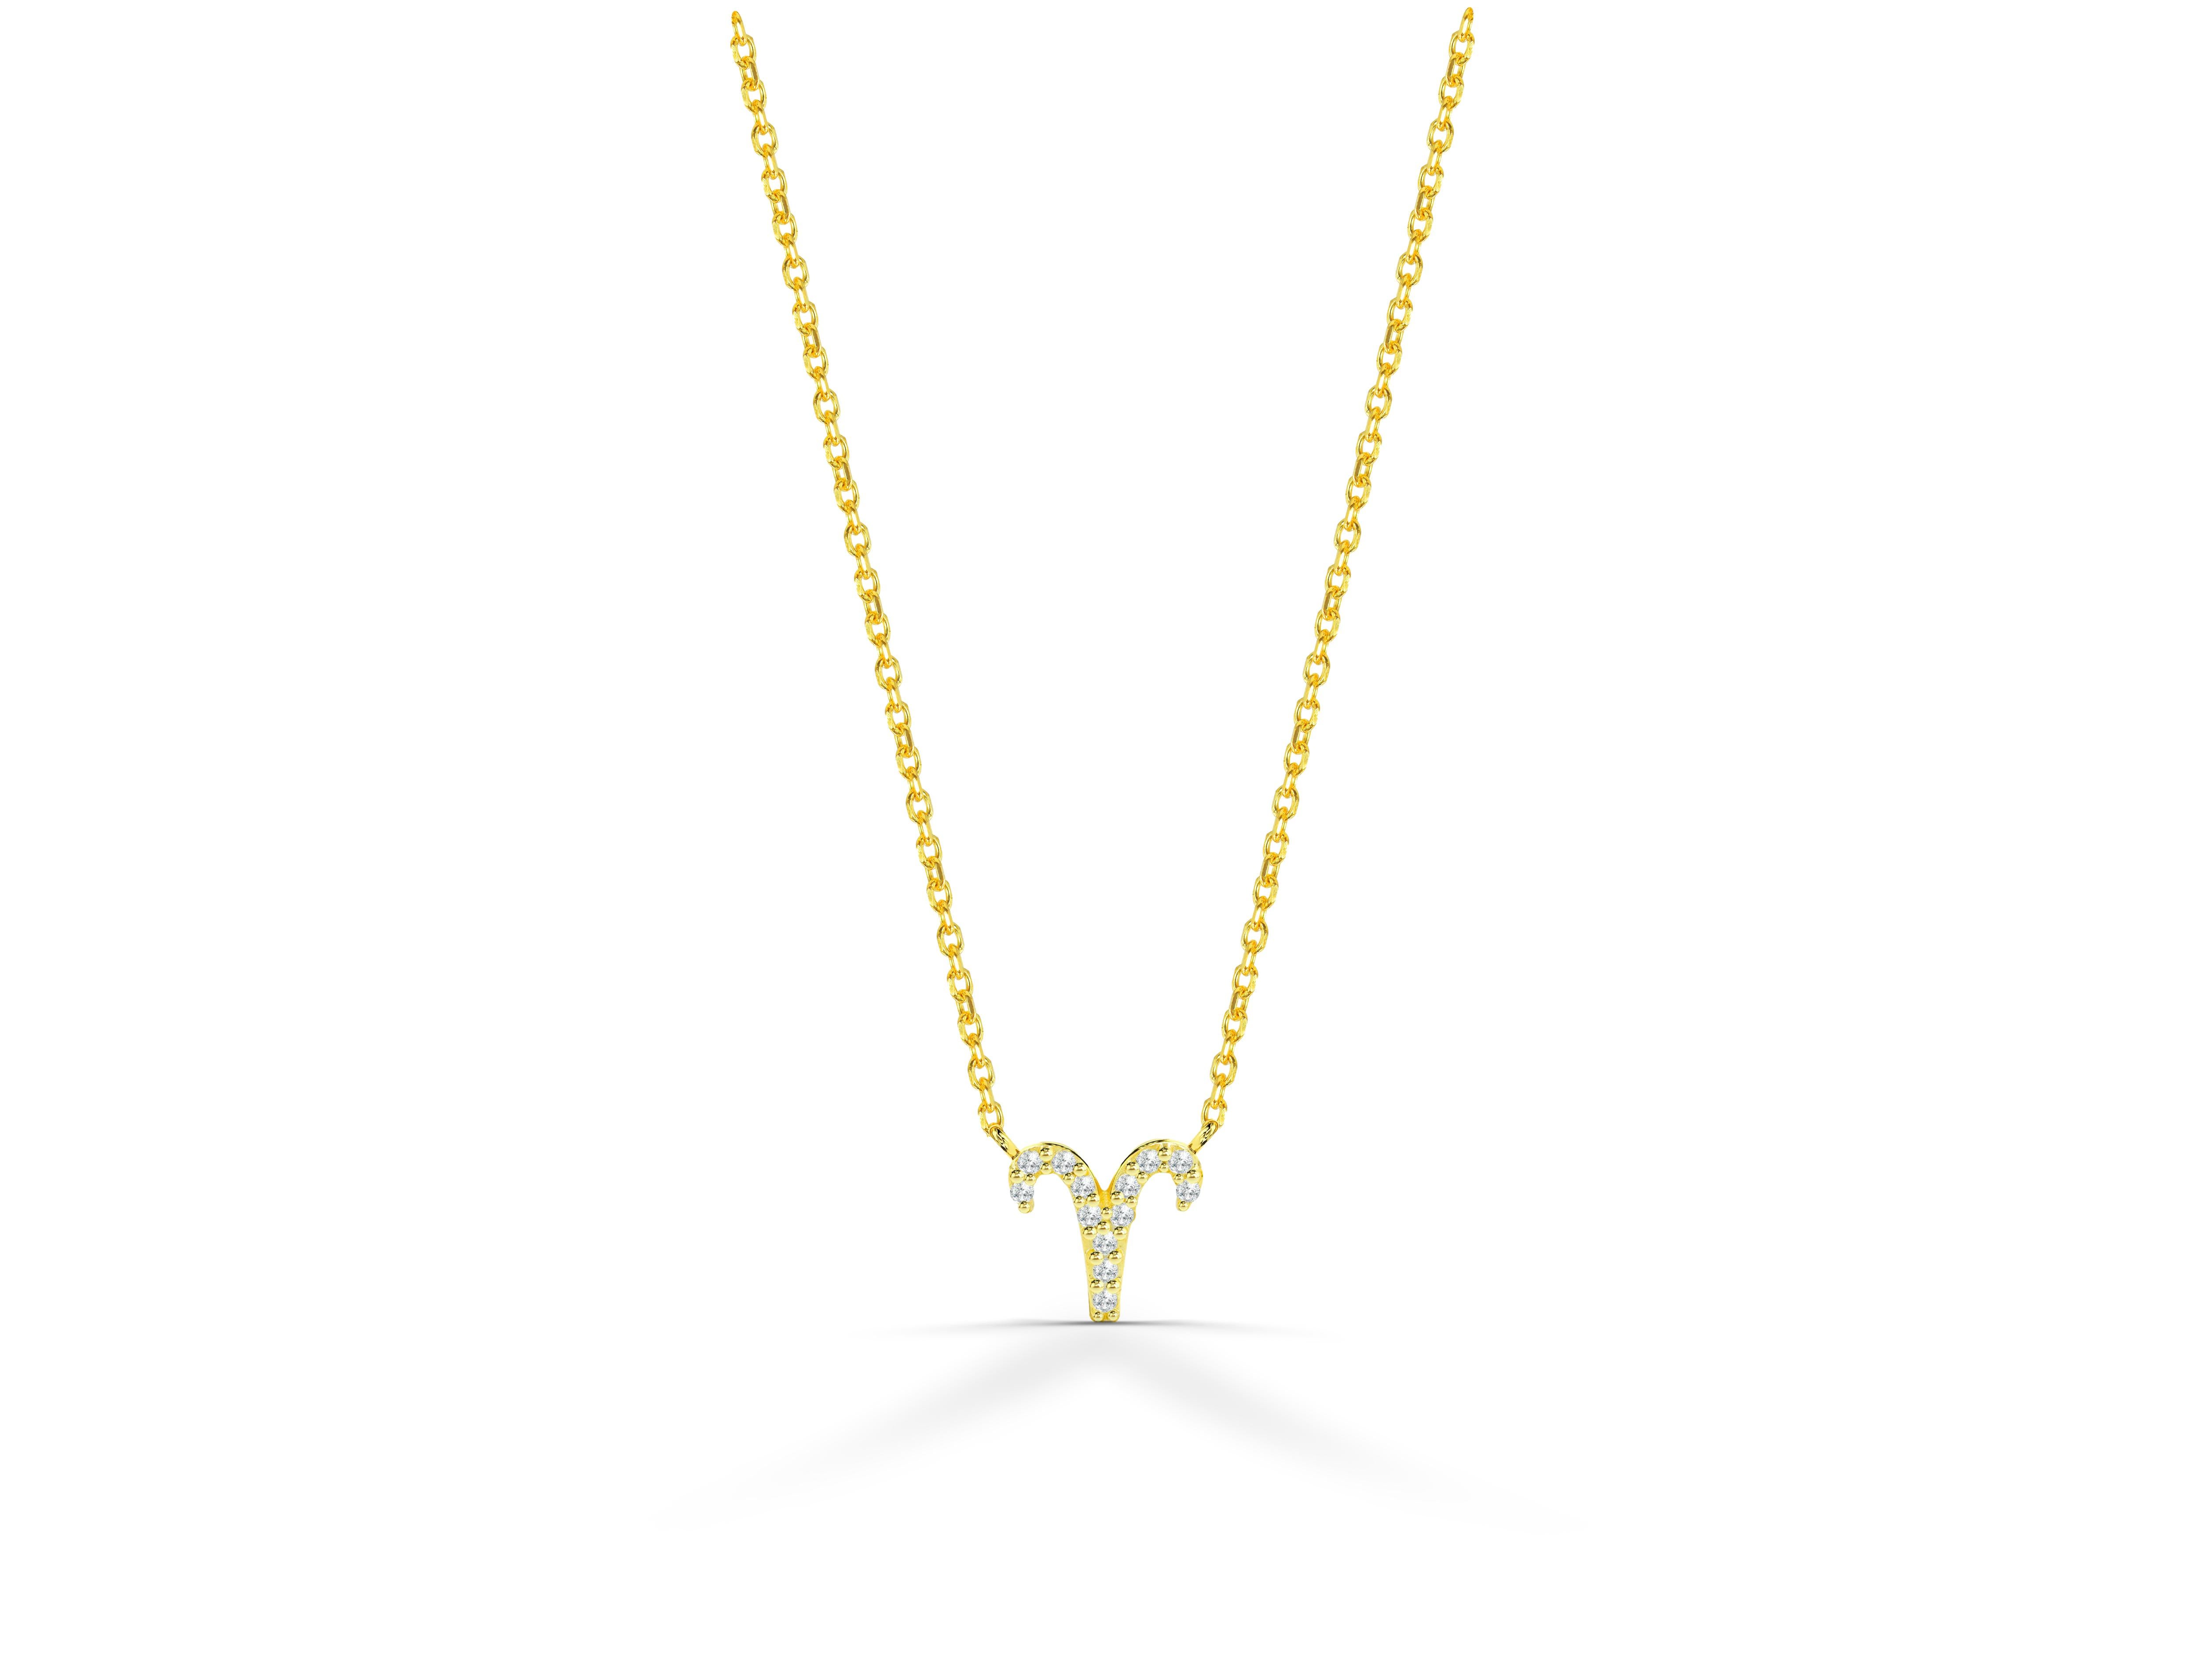 Le collier Bélier en diamants, beau et étincelant, est fabriqué en or massif 14k.
Disponible en trois couleurs d'or :  Or jaune / Or rose / Or blanc.

Diamant naturel véritable de taille ronde : chaque diamant est sélectionné à la main par mes soins